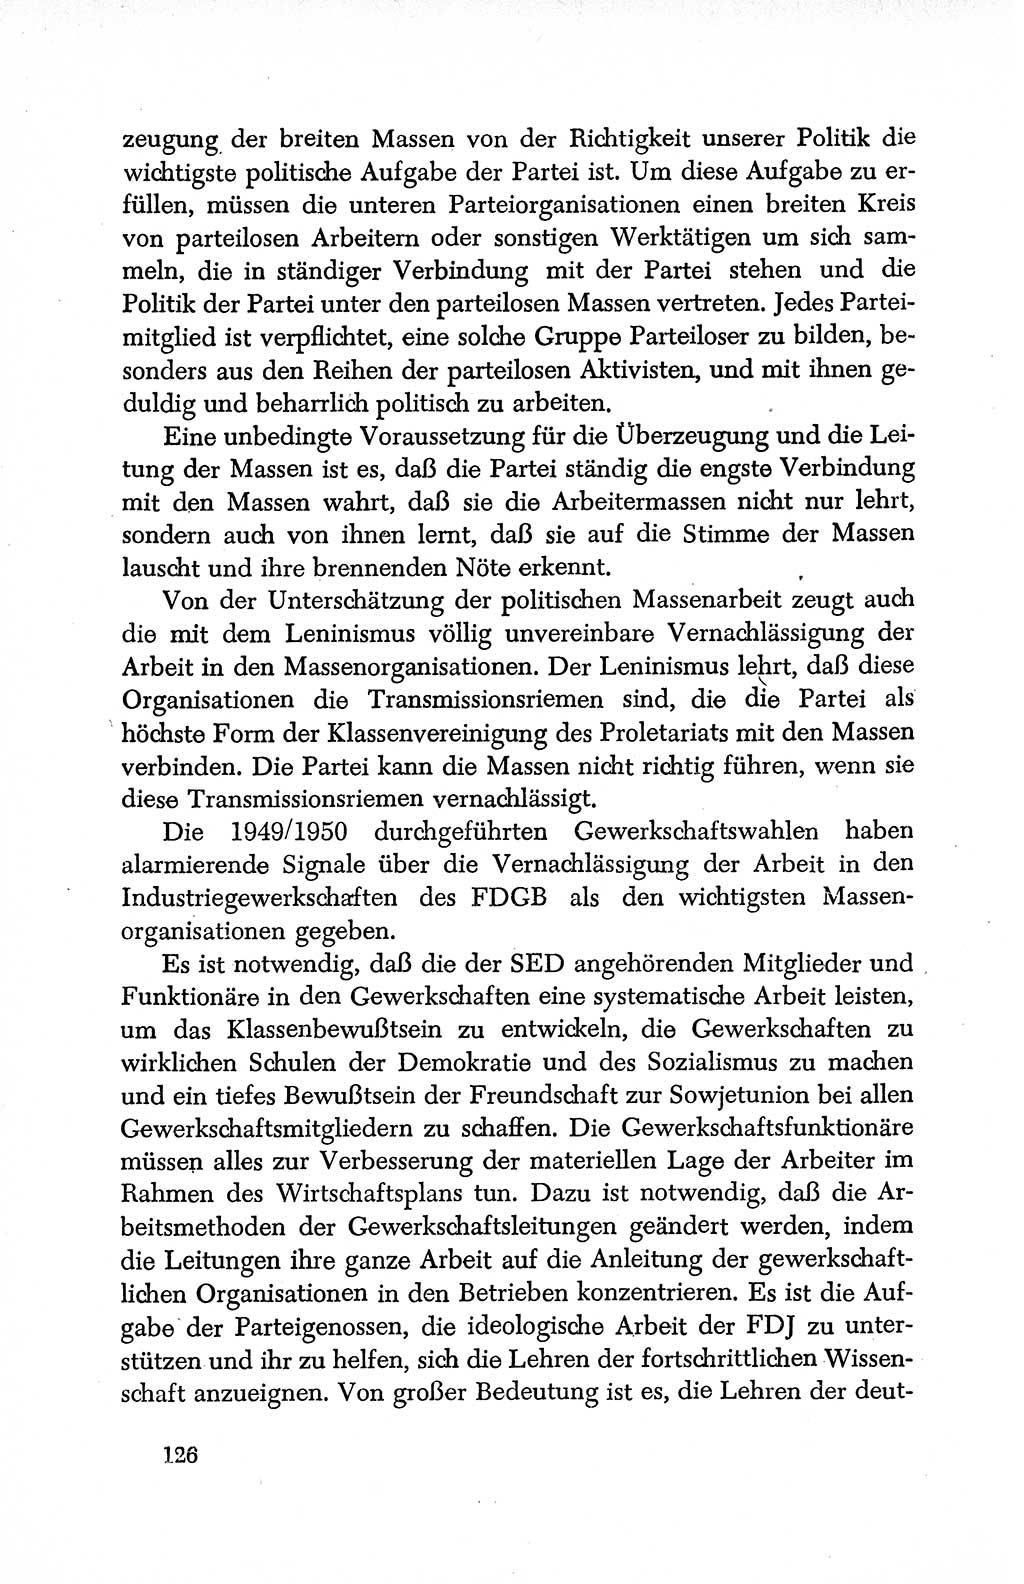 Dokumente der Sozialistischen Einheitspartei Deutschlands (SED) [Deutsche Demokratische Republik (DDR)] 1950-1952, Seite 126 (Dok. SED DDR 1950-1952, S. 126)